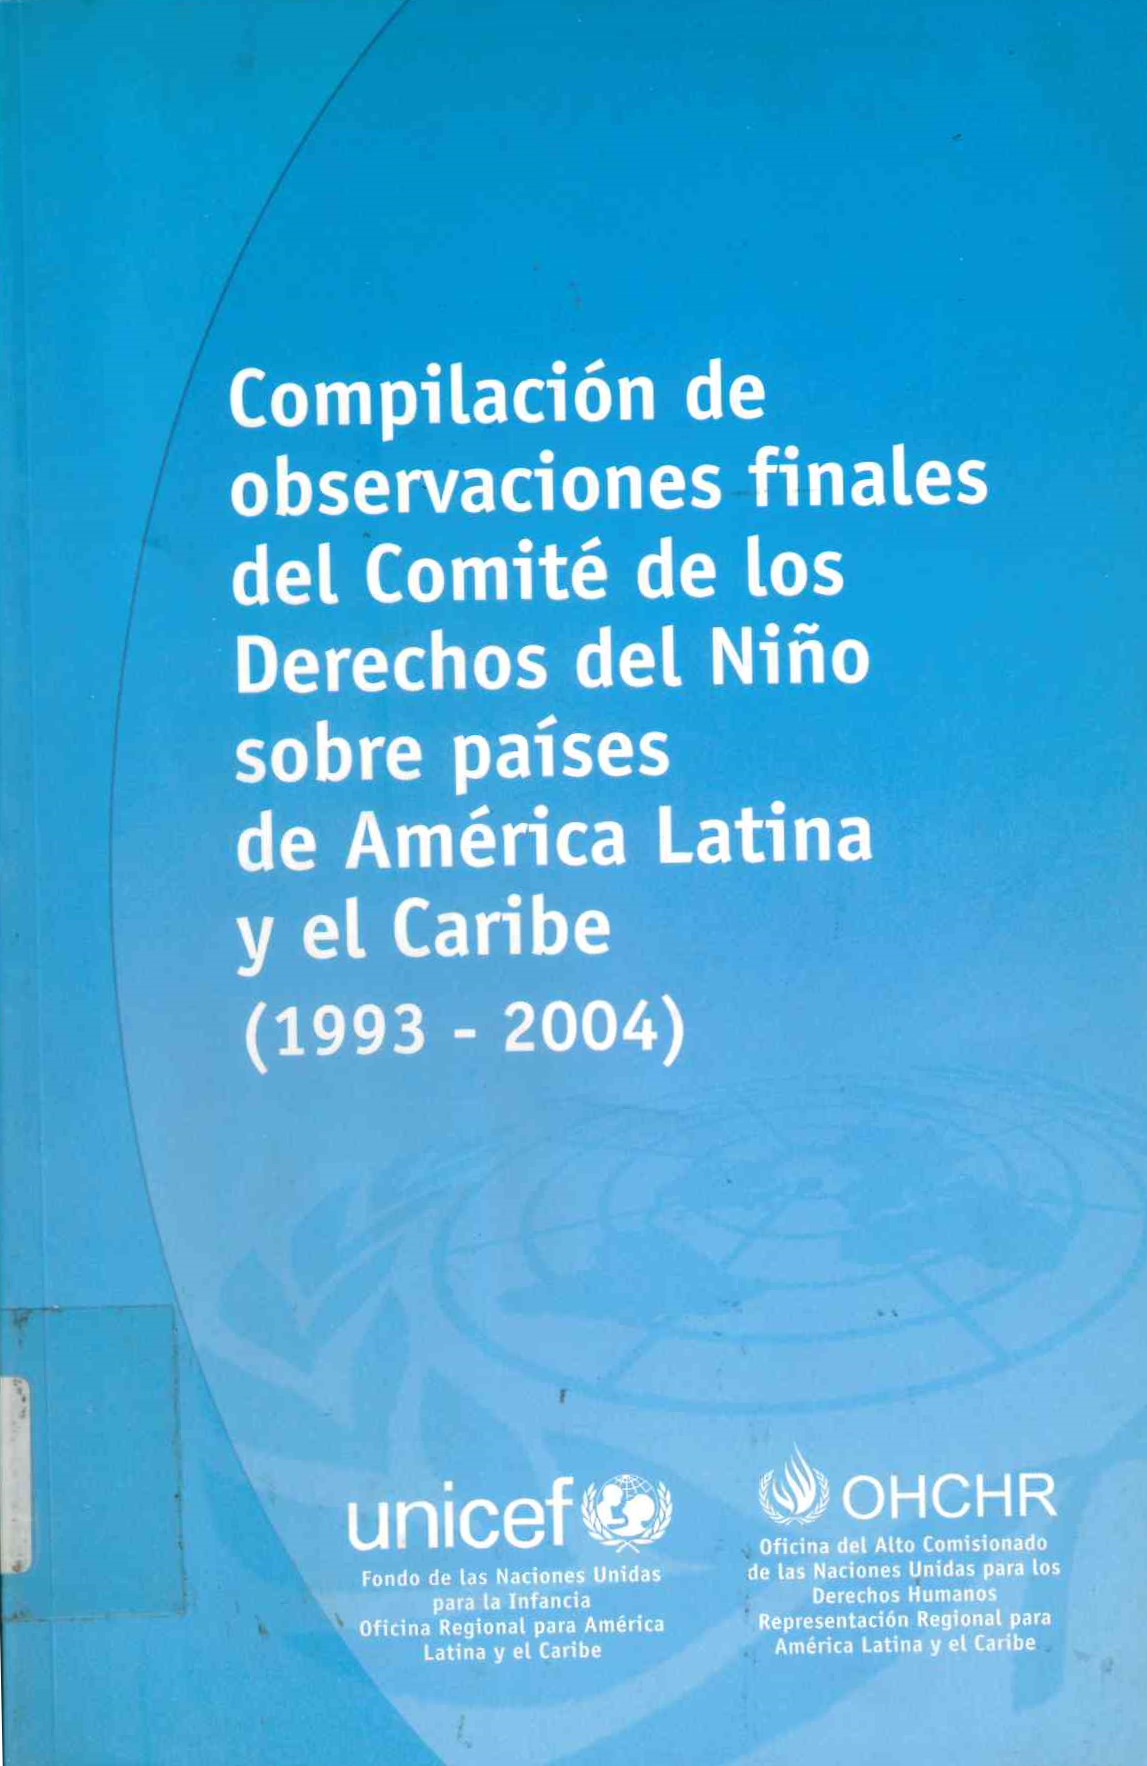 Compilación de observaciones finales del comité de los derechos del niño sobre países de América Latina y el Caribe (1993-2004)